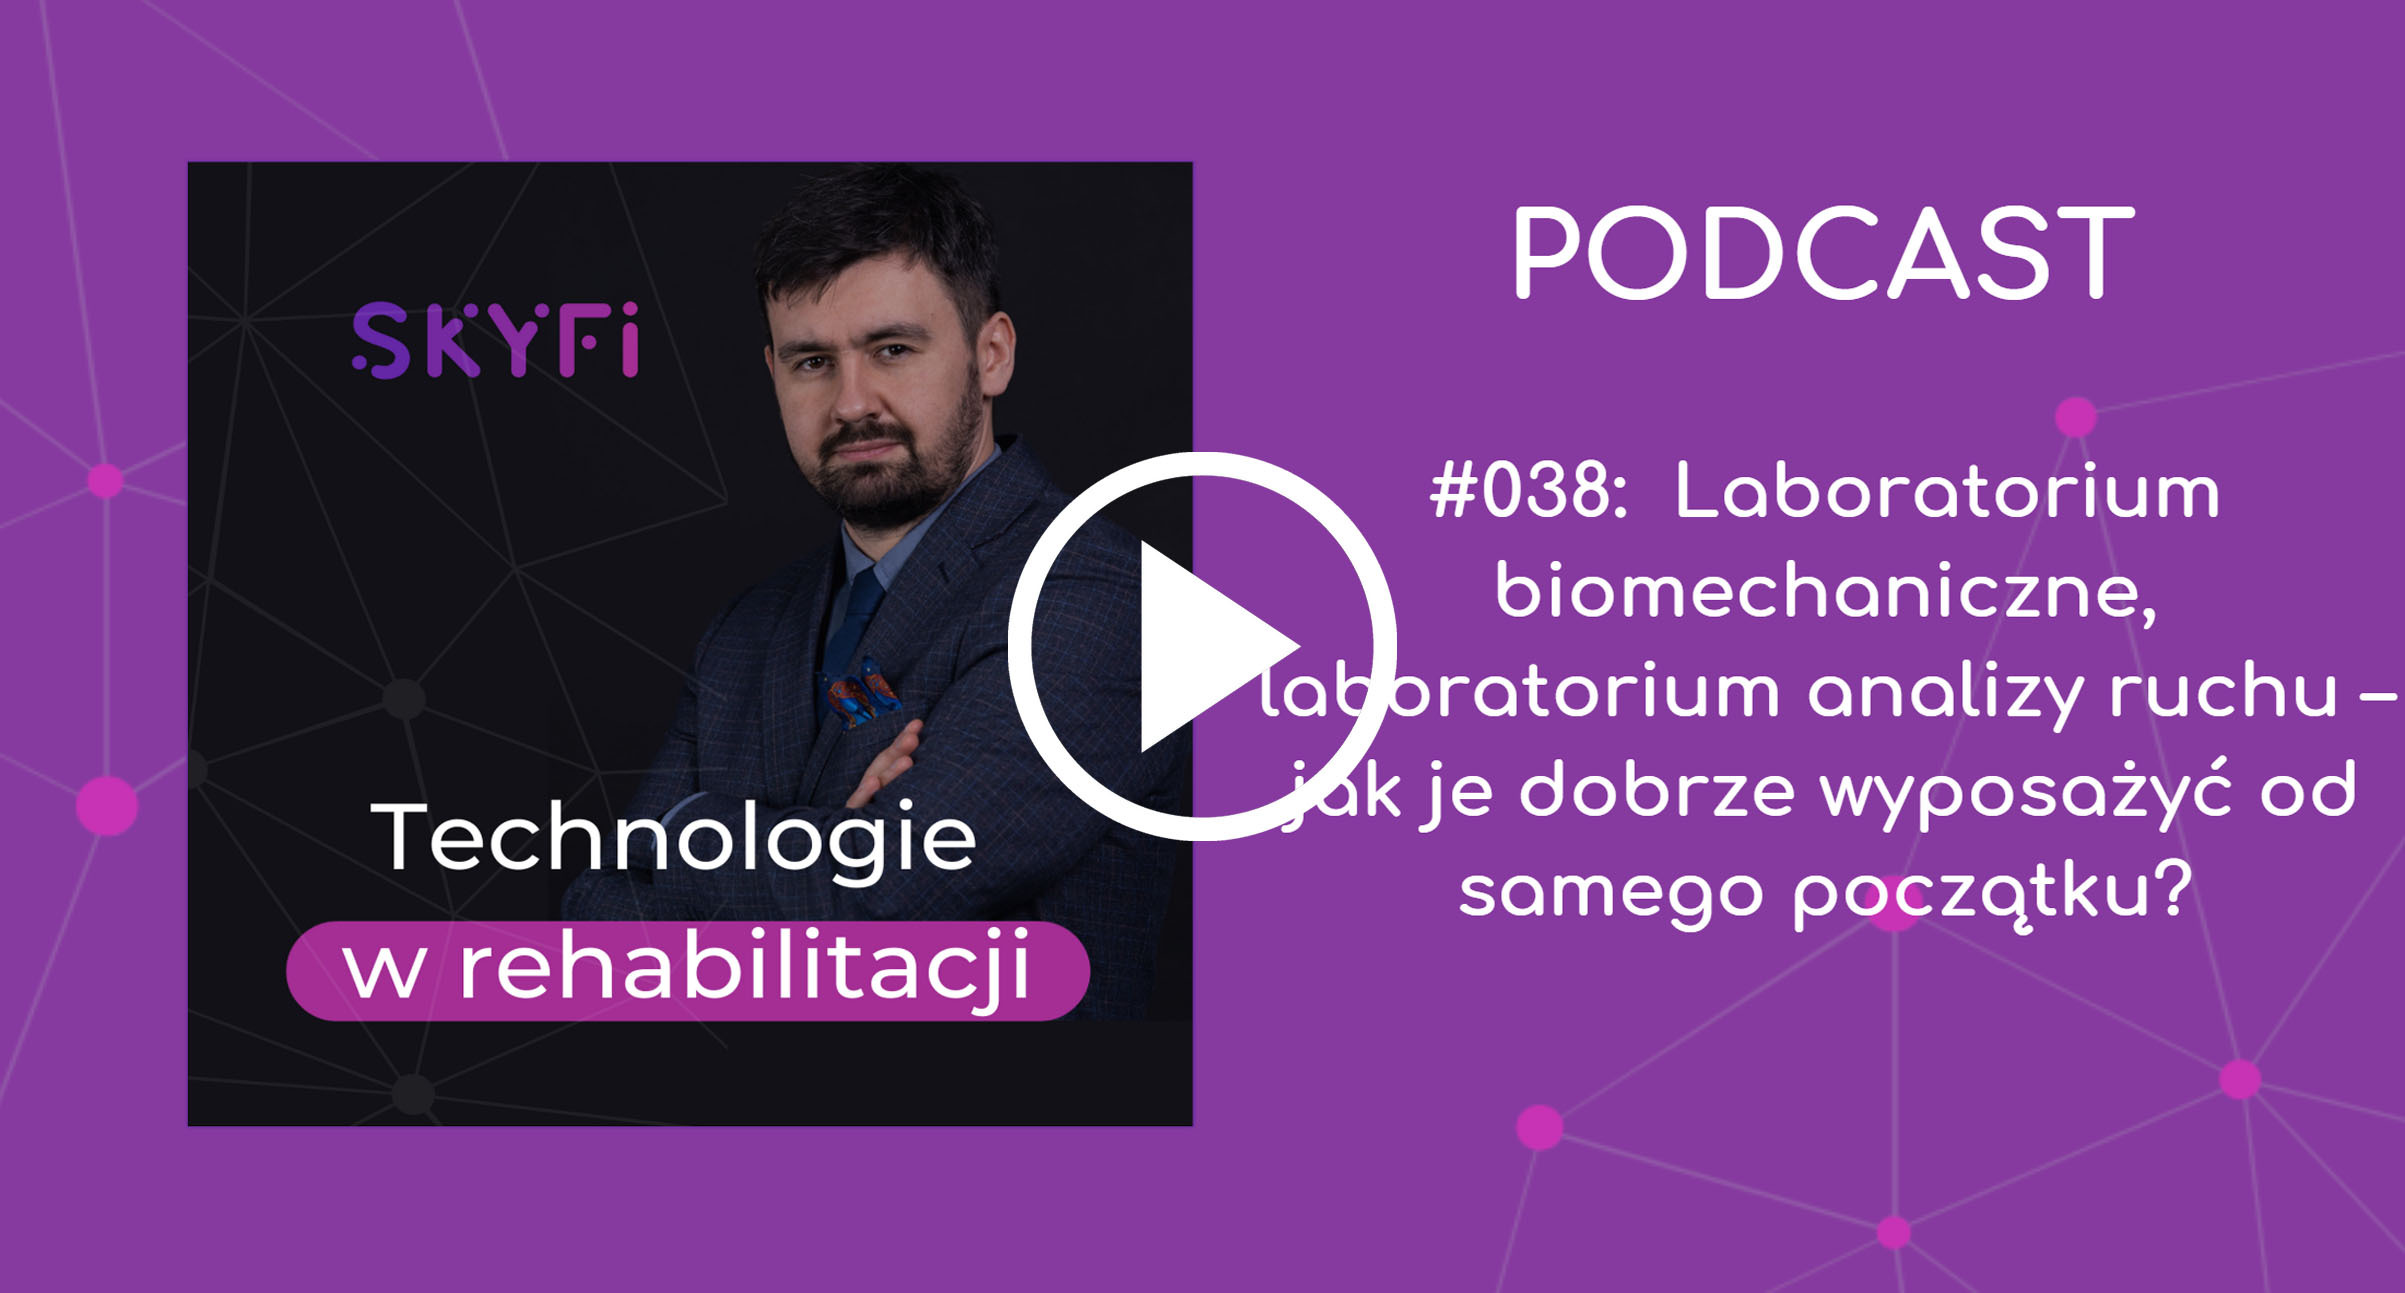 Podcast-laboratorium-biomechaniczne-analiza-ruchu-TECHNOLOGIE-W-REHABILITACJI-Skyfi